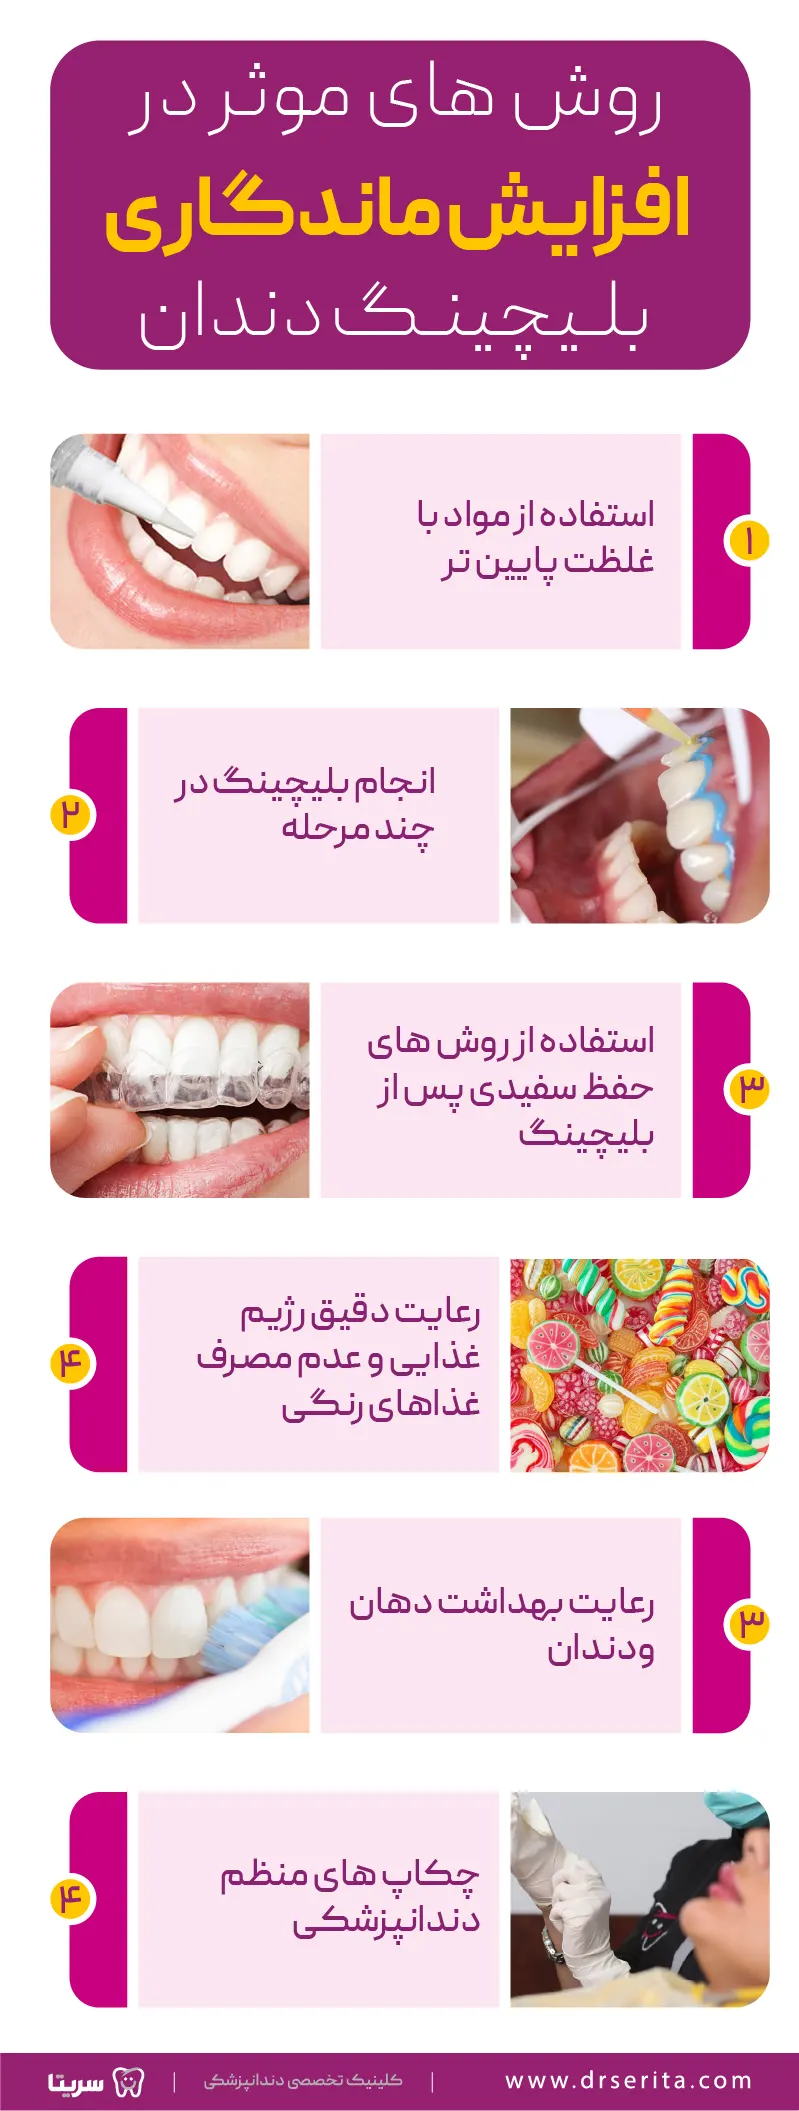 روش های موثر در افزایش ماندگاری بلیچینگ دندان